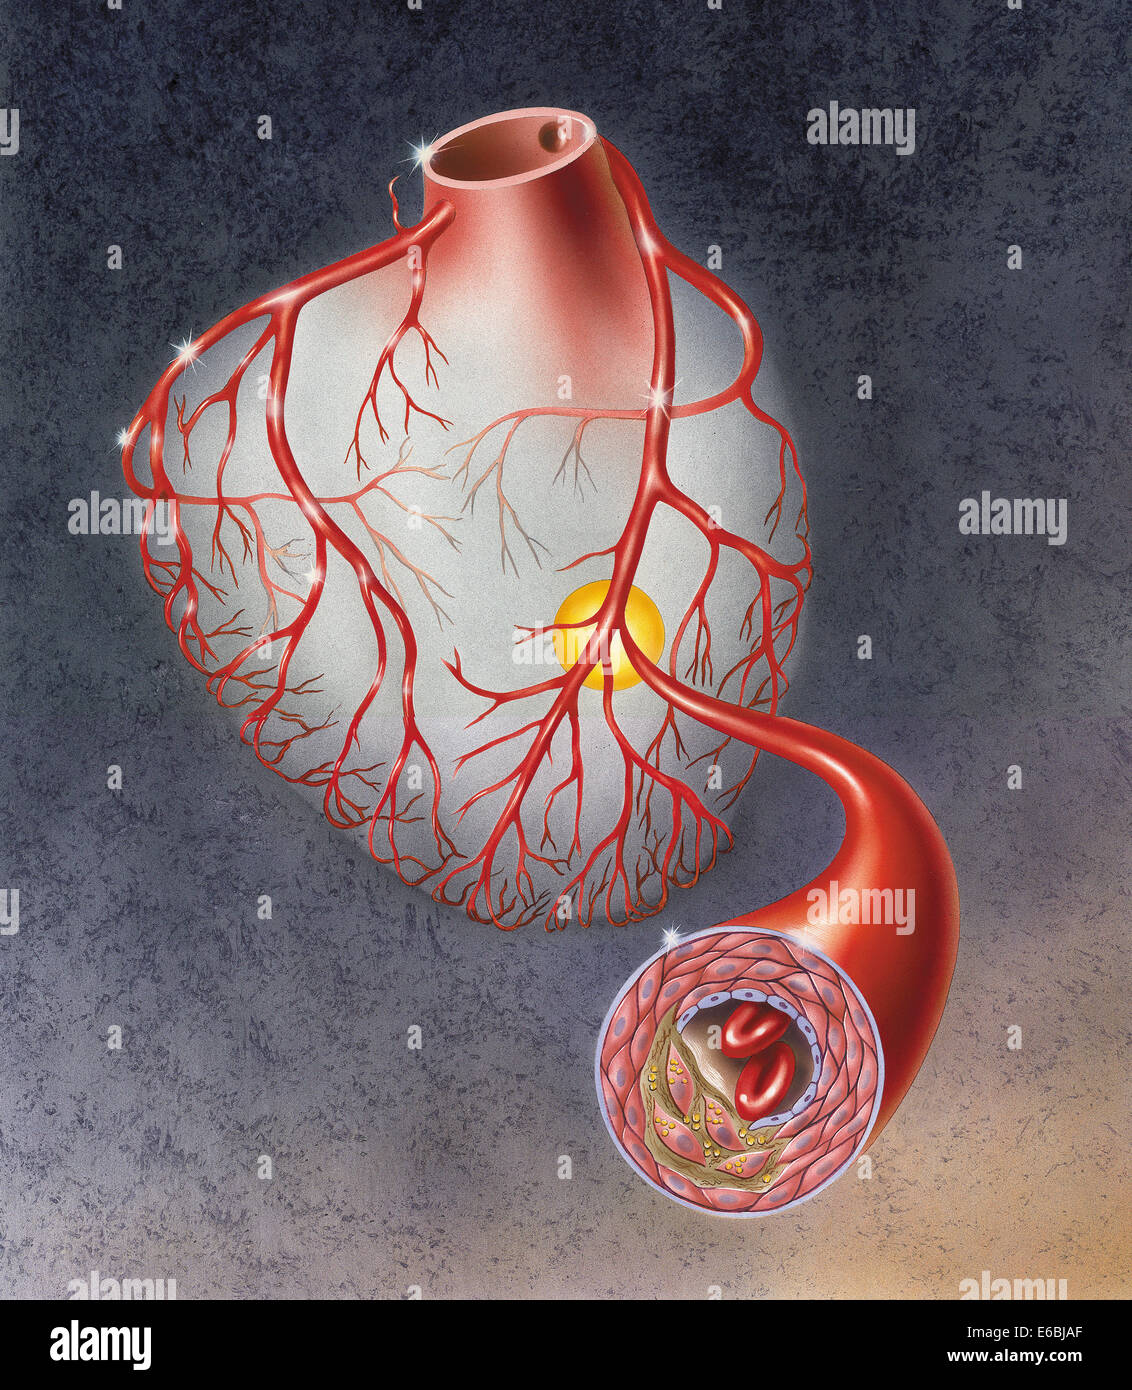 Arterien am Herzen zeigt atherosklerotischen Plaques in einer Arterie. Stockfoto